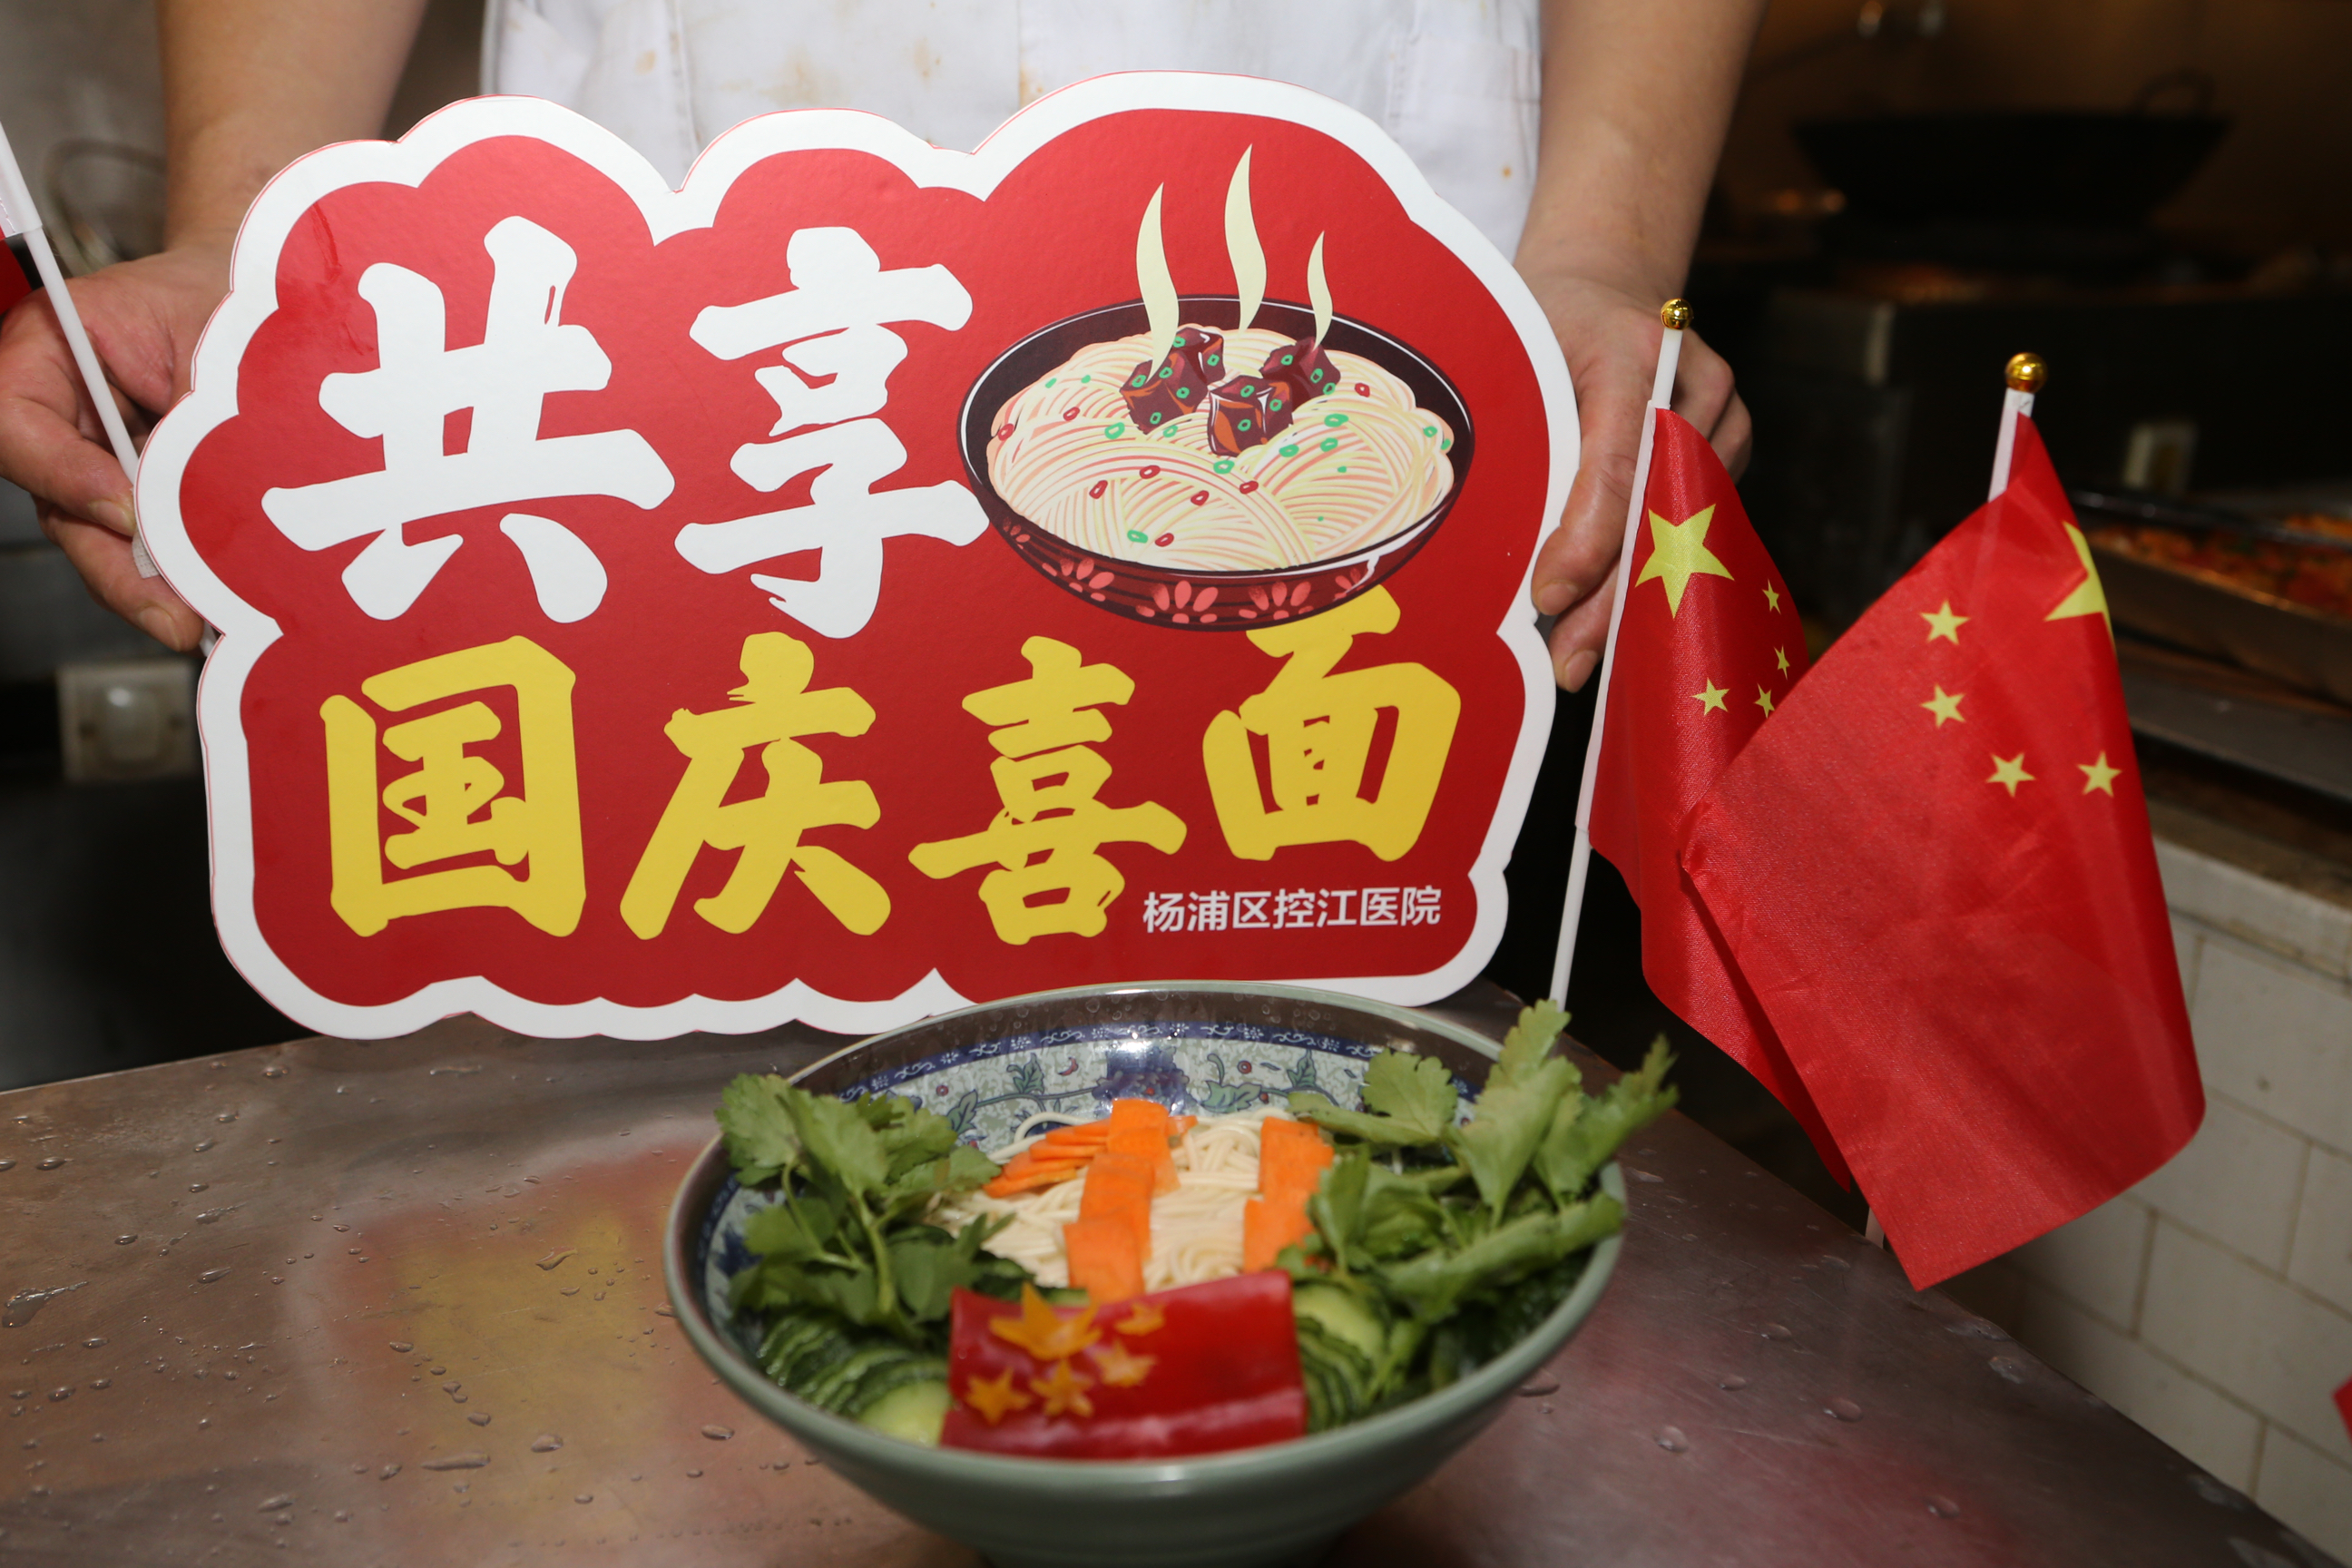 楊浦區控江醫院膳食科後廚們製作的“國慶面”。控江醫院供圖